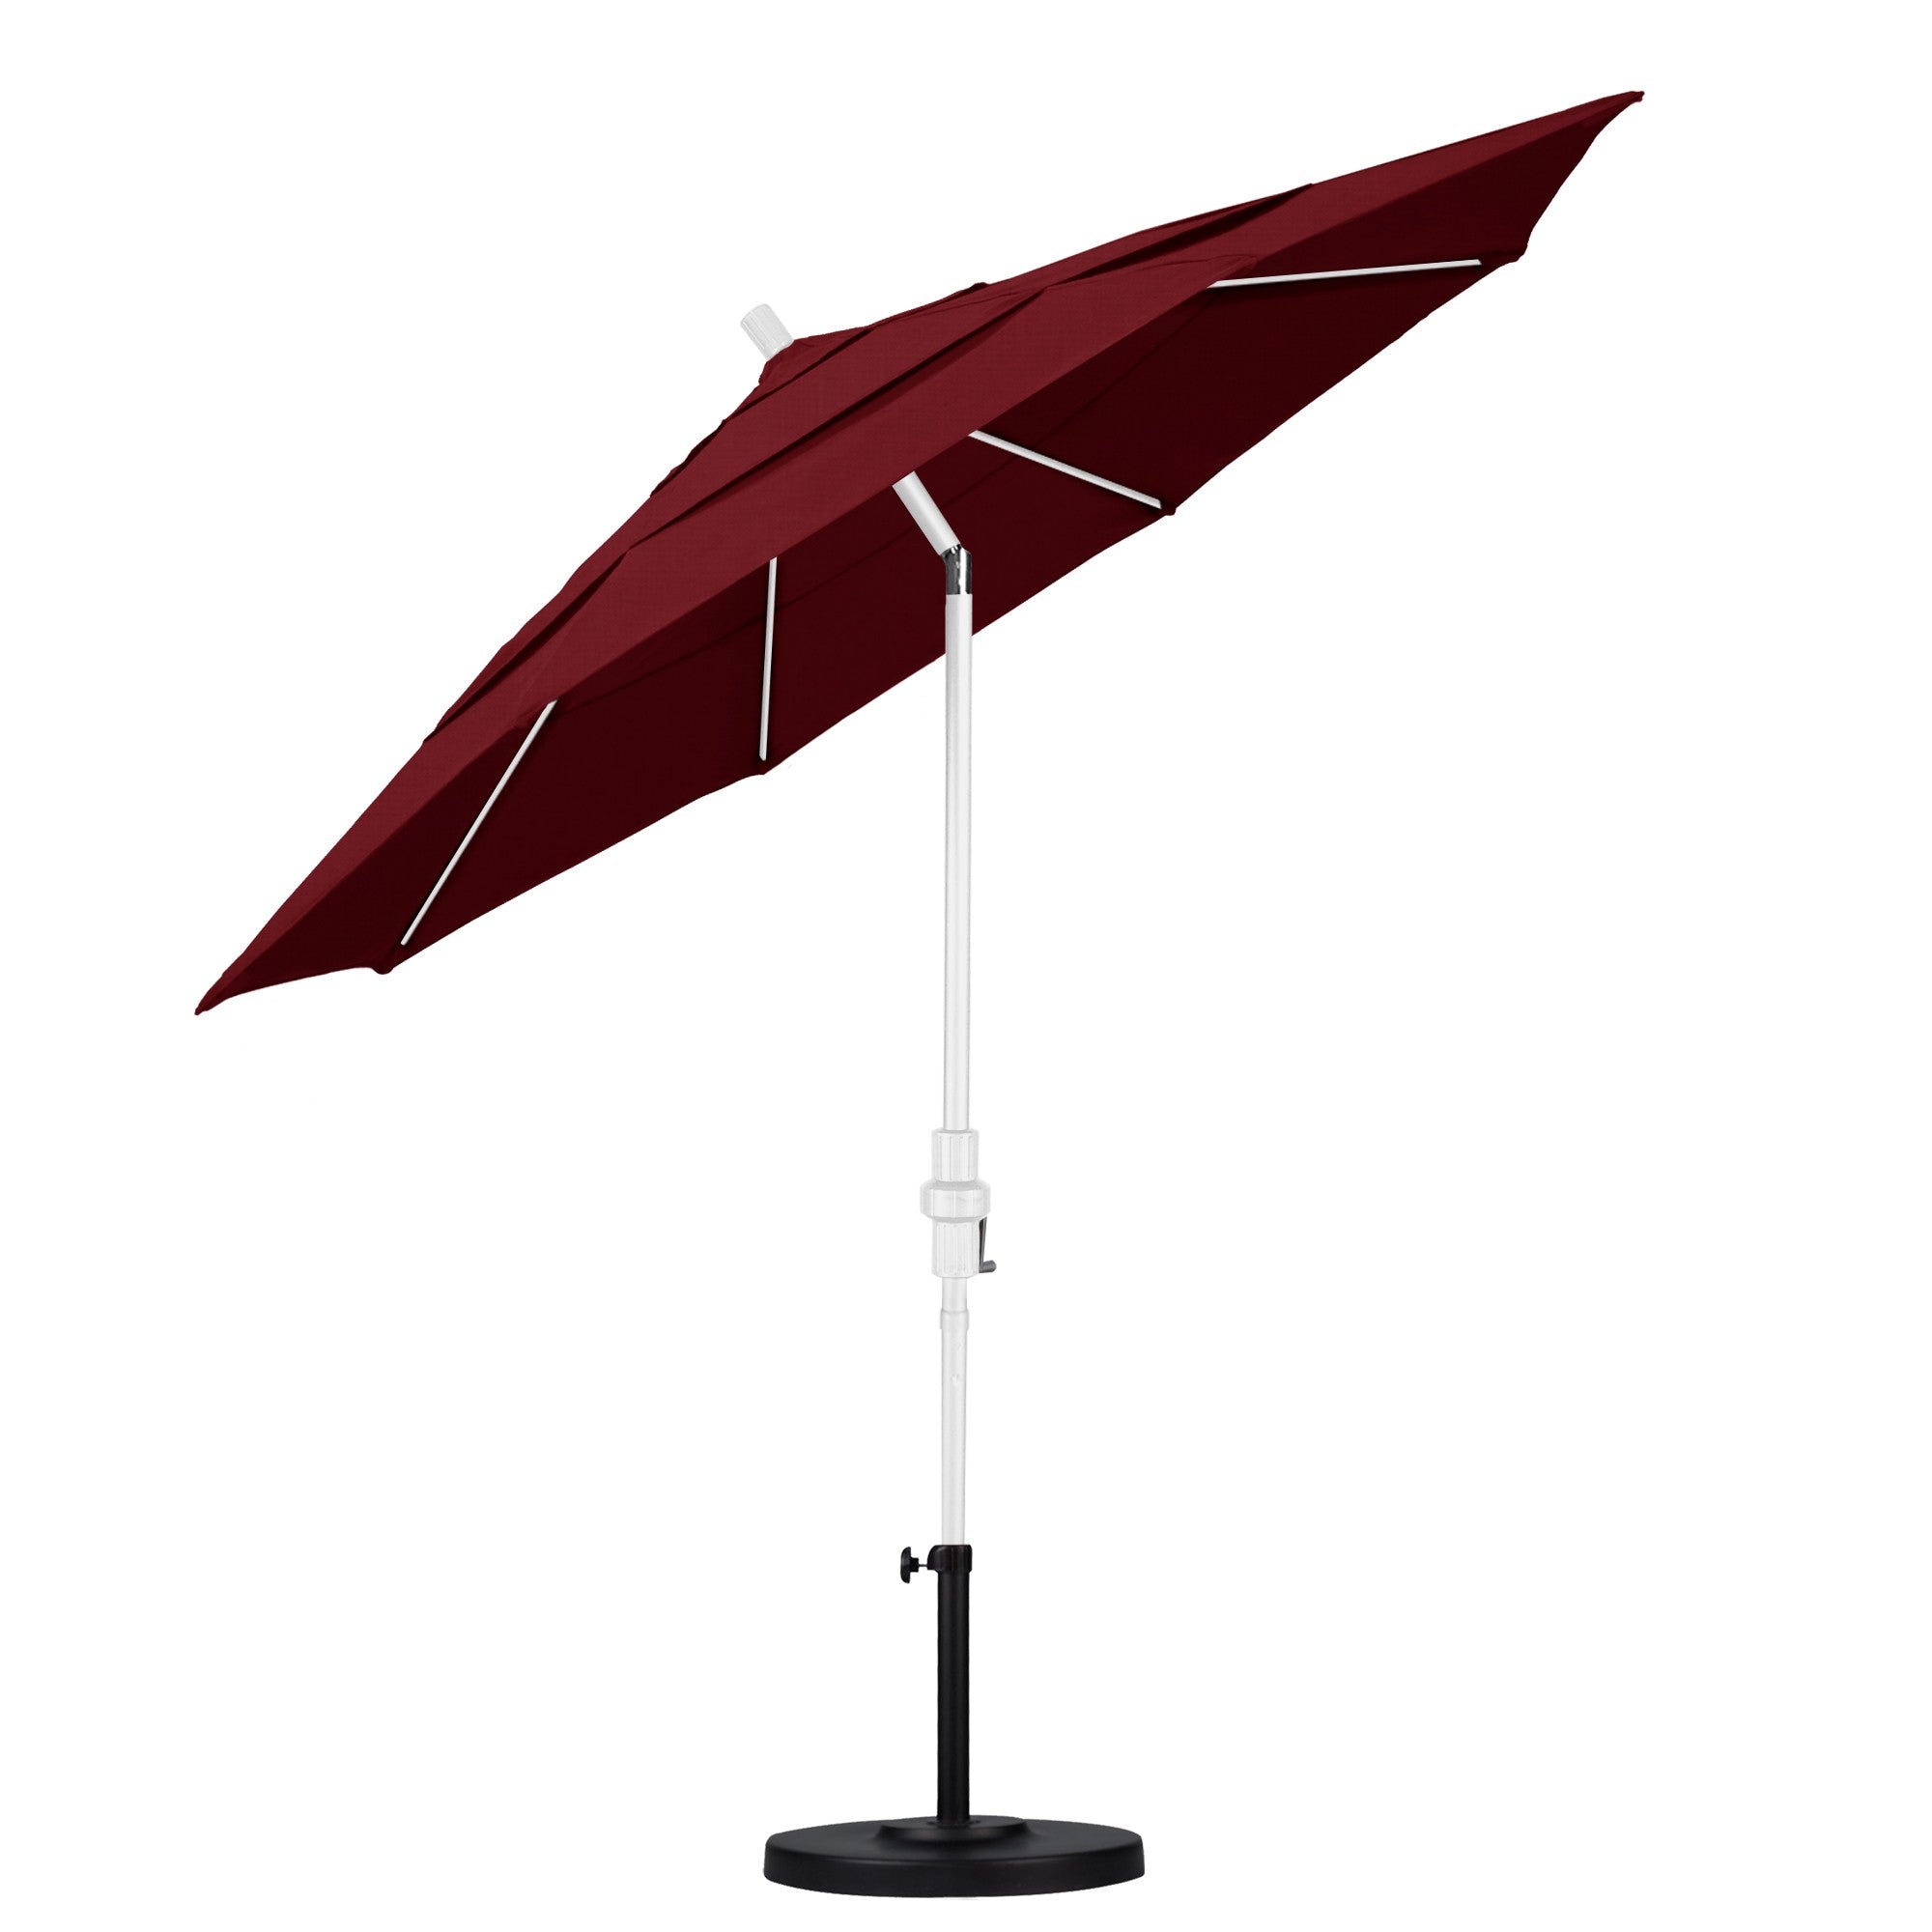 California Umbrella - 11' - Patio Umbrella Umbrella - Aluminum Pole - Spectrum Ruby - Sunbrella  - GSCUF118170-48095-DWV